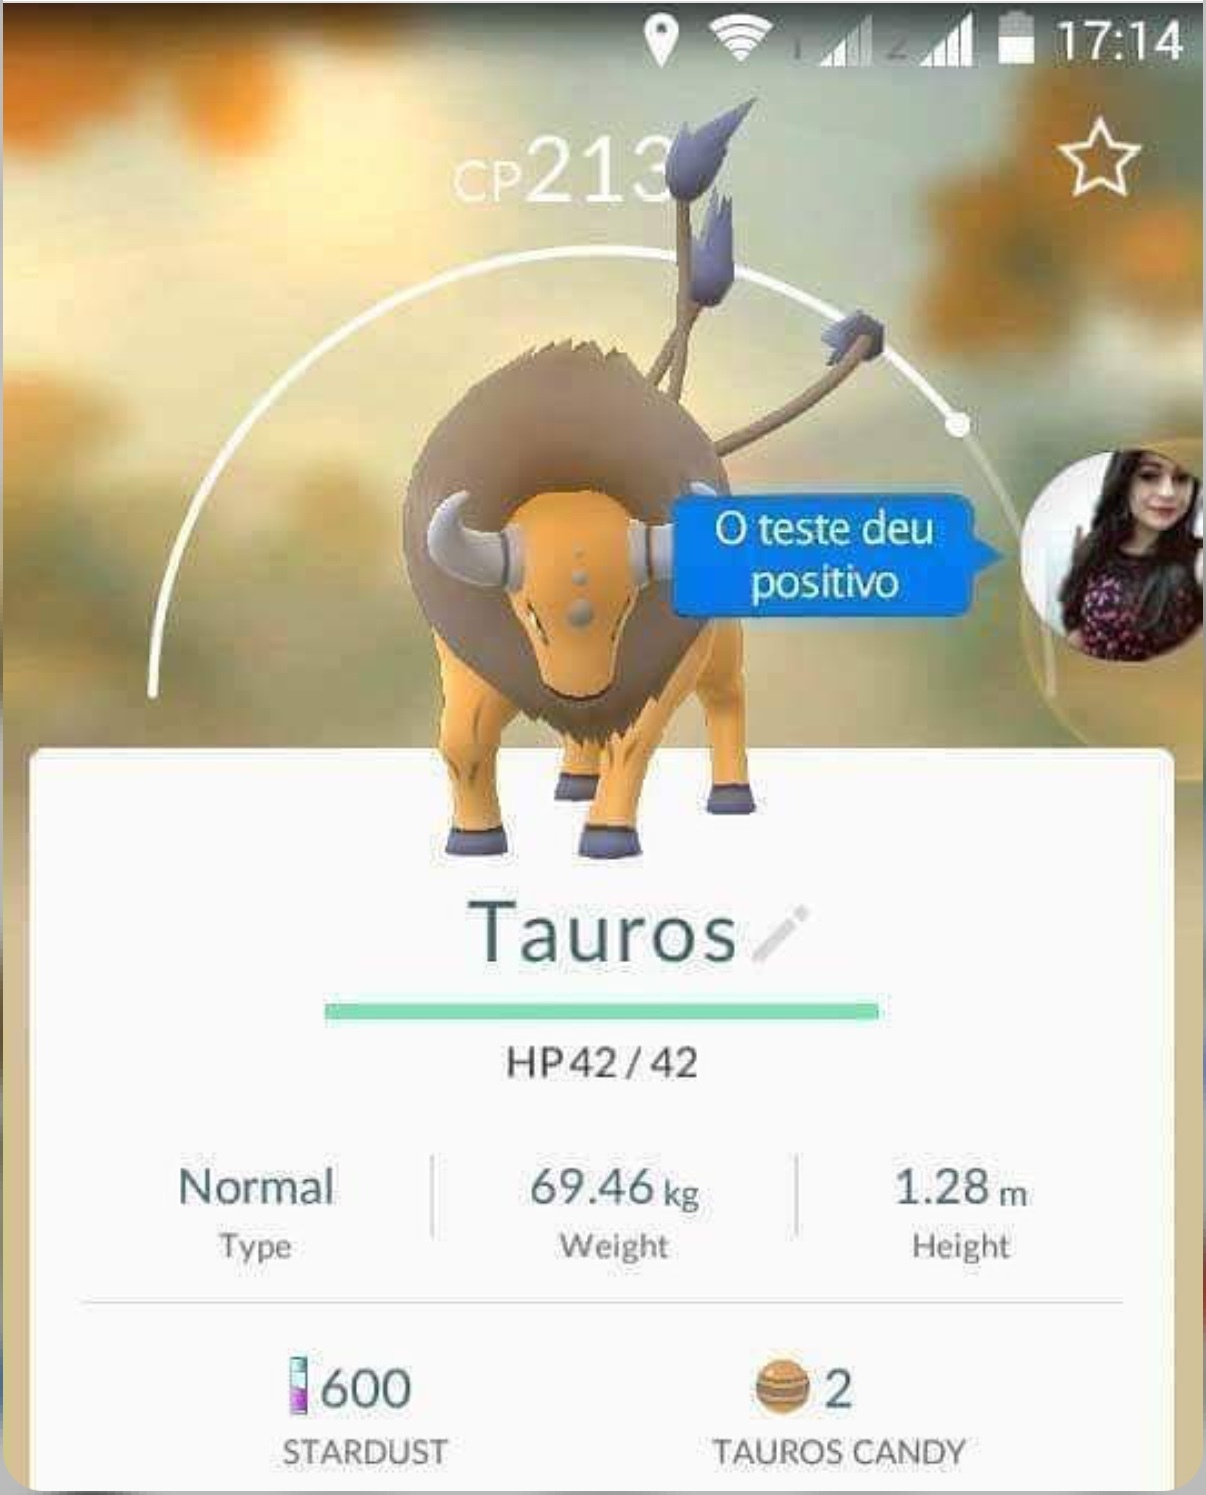 PEGUEI O TAUROS !!! - meme